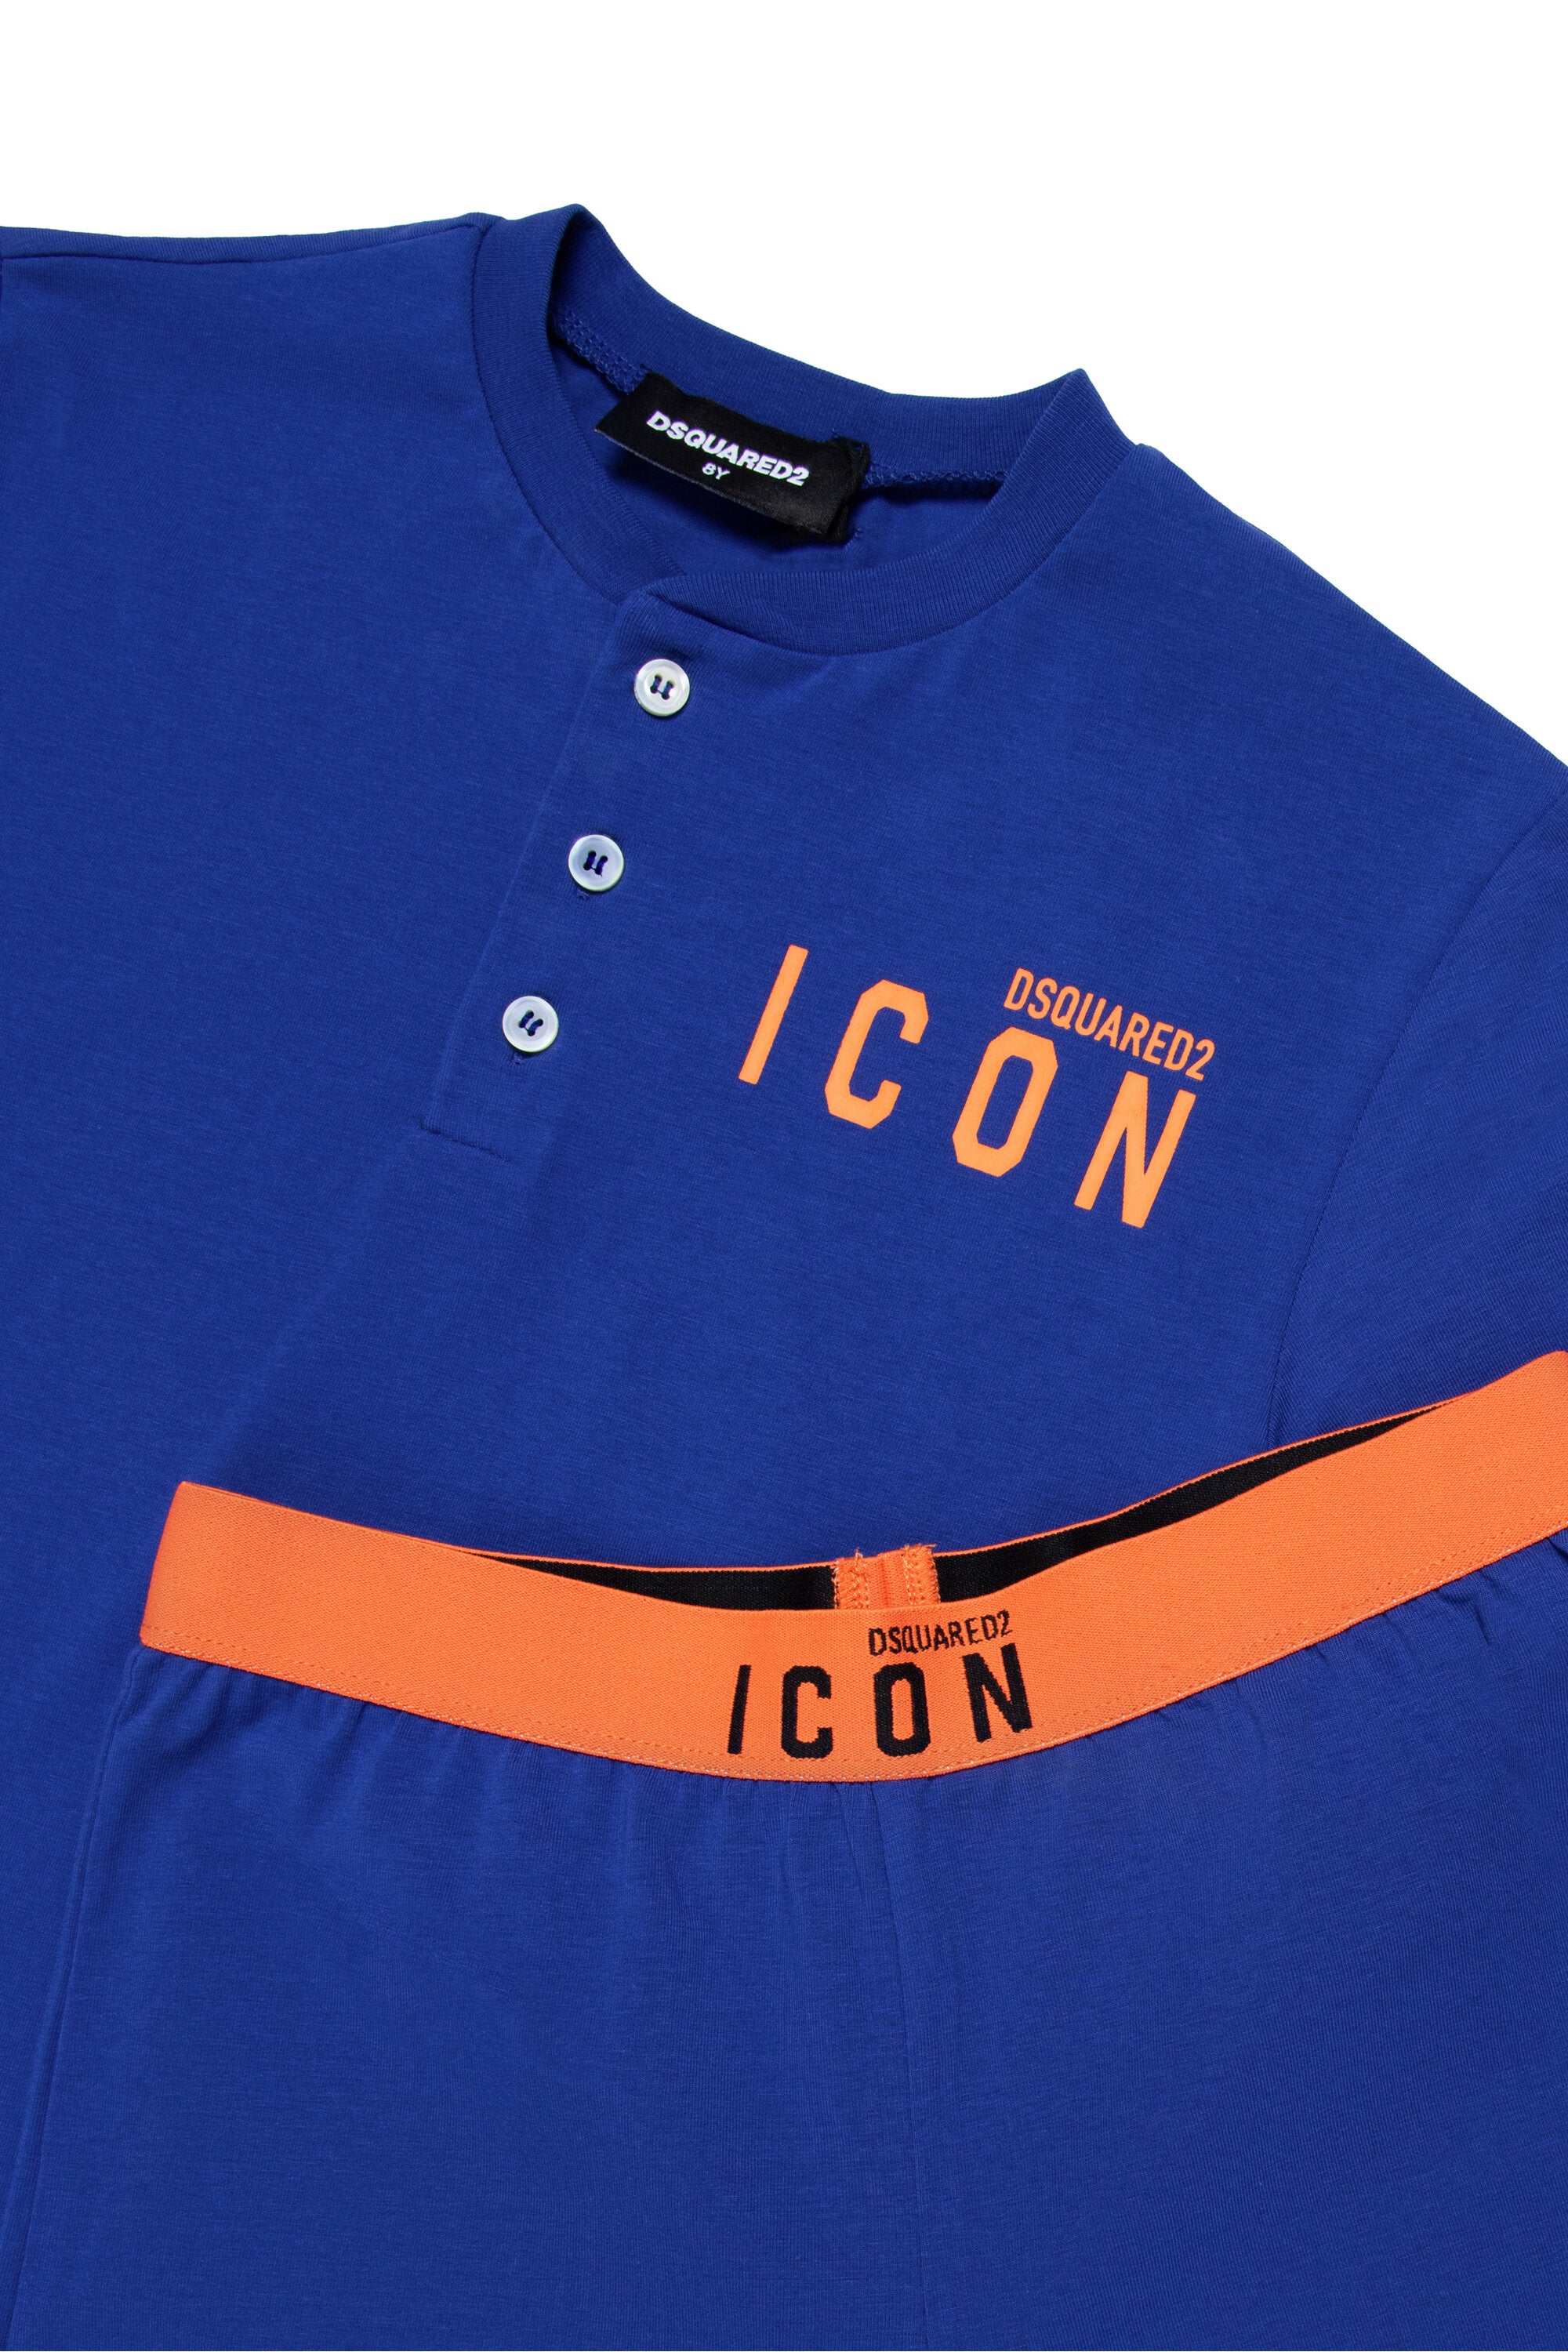 Short jersey pajamas with ICON logo